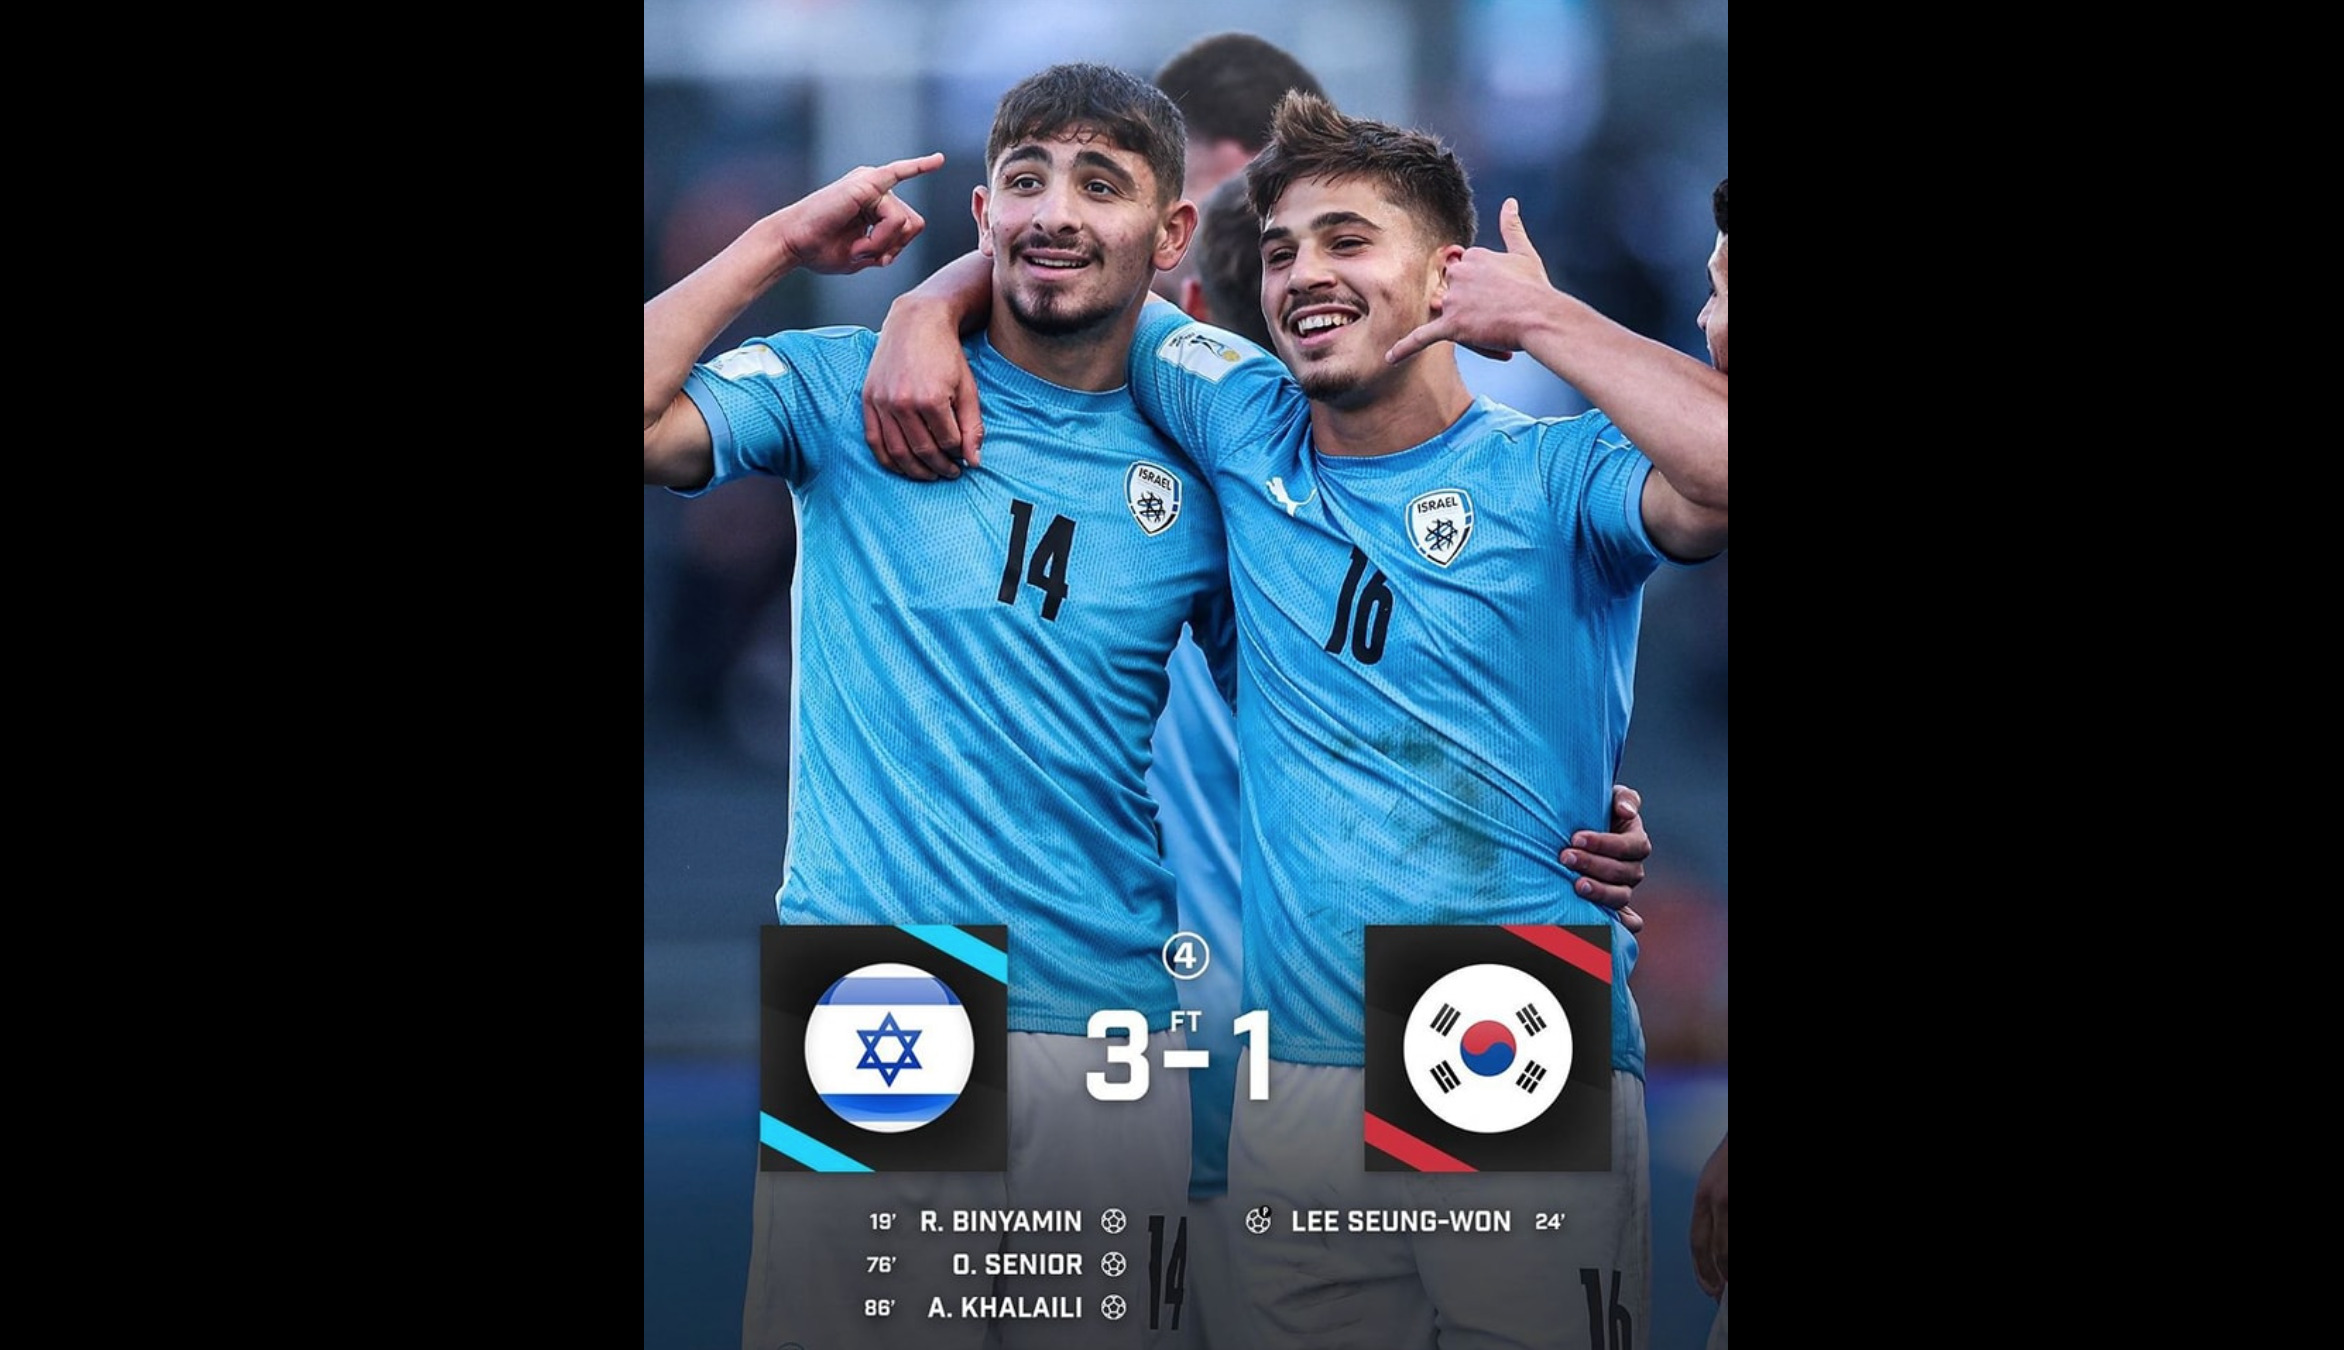 Israël behaalt derde plaats op WK voetbal onder de twintig jaar